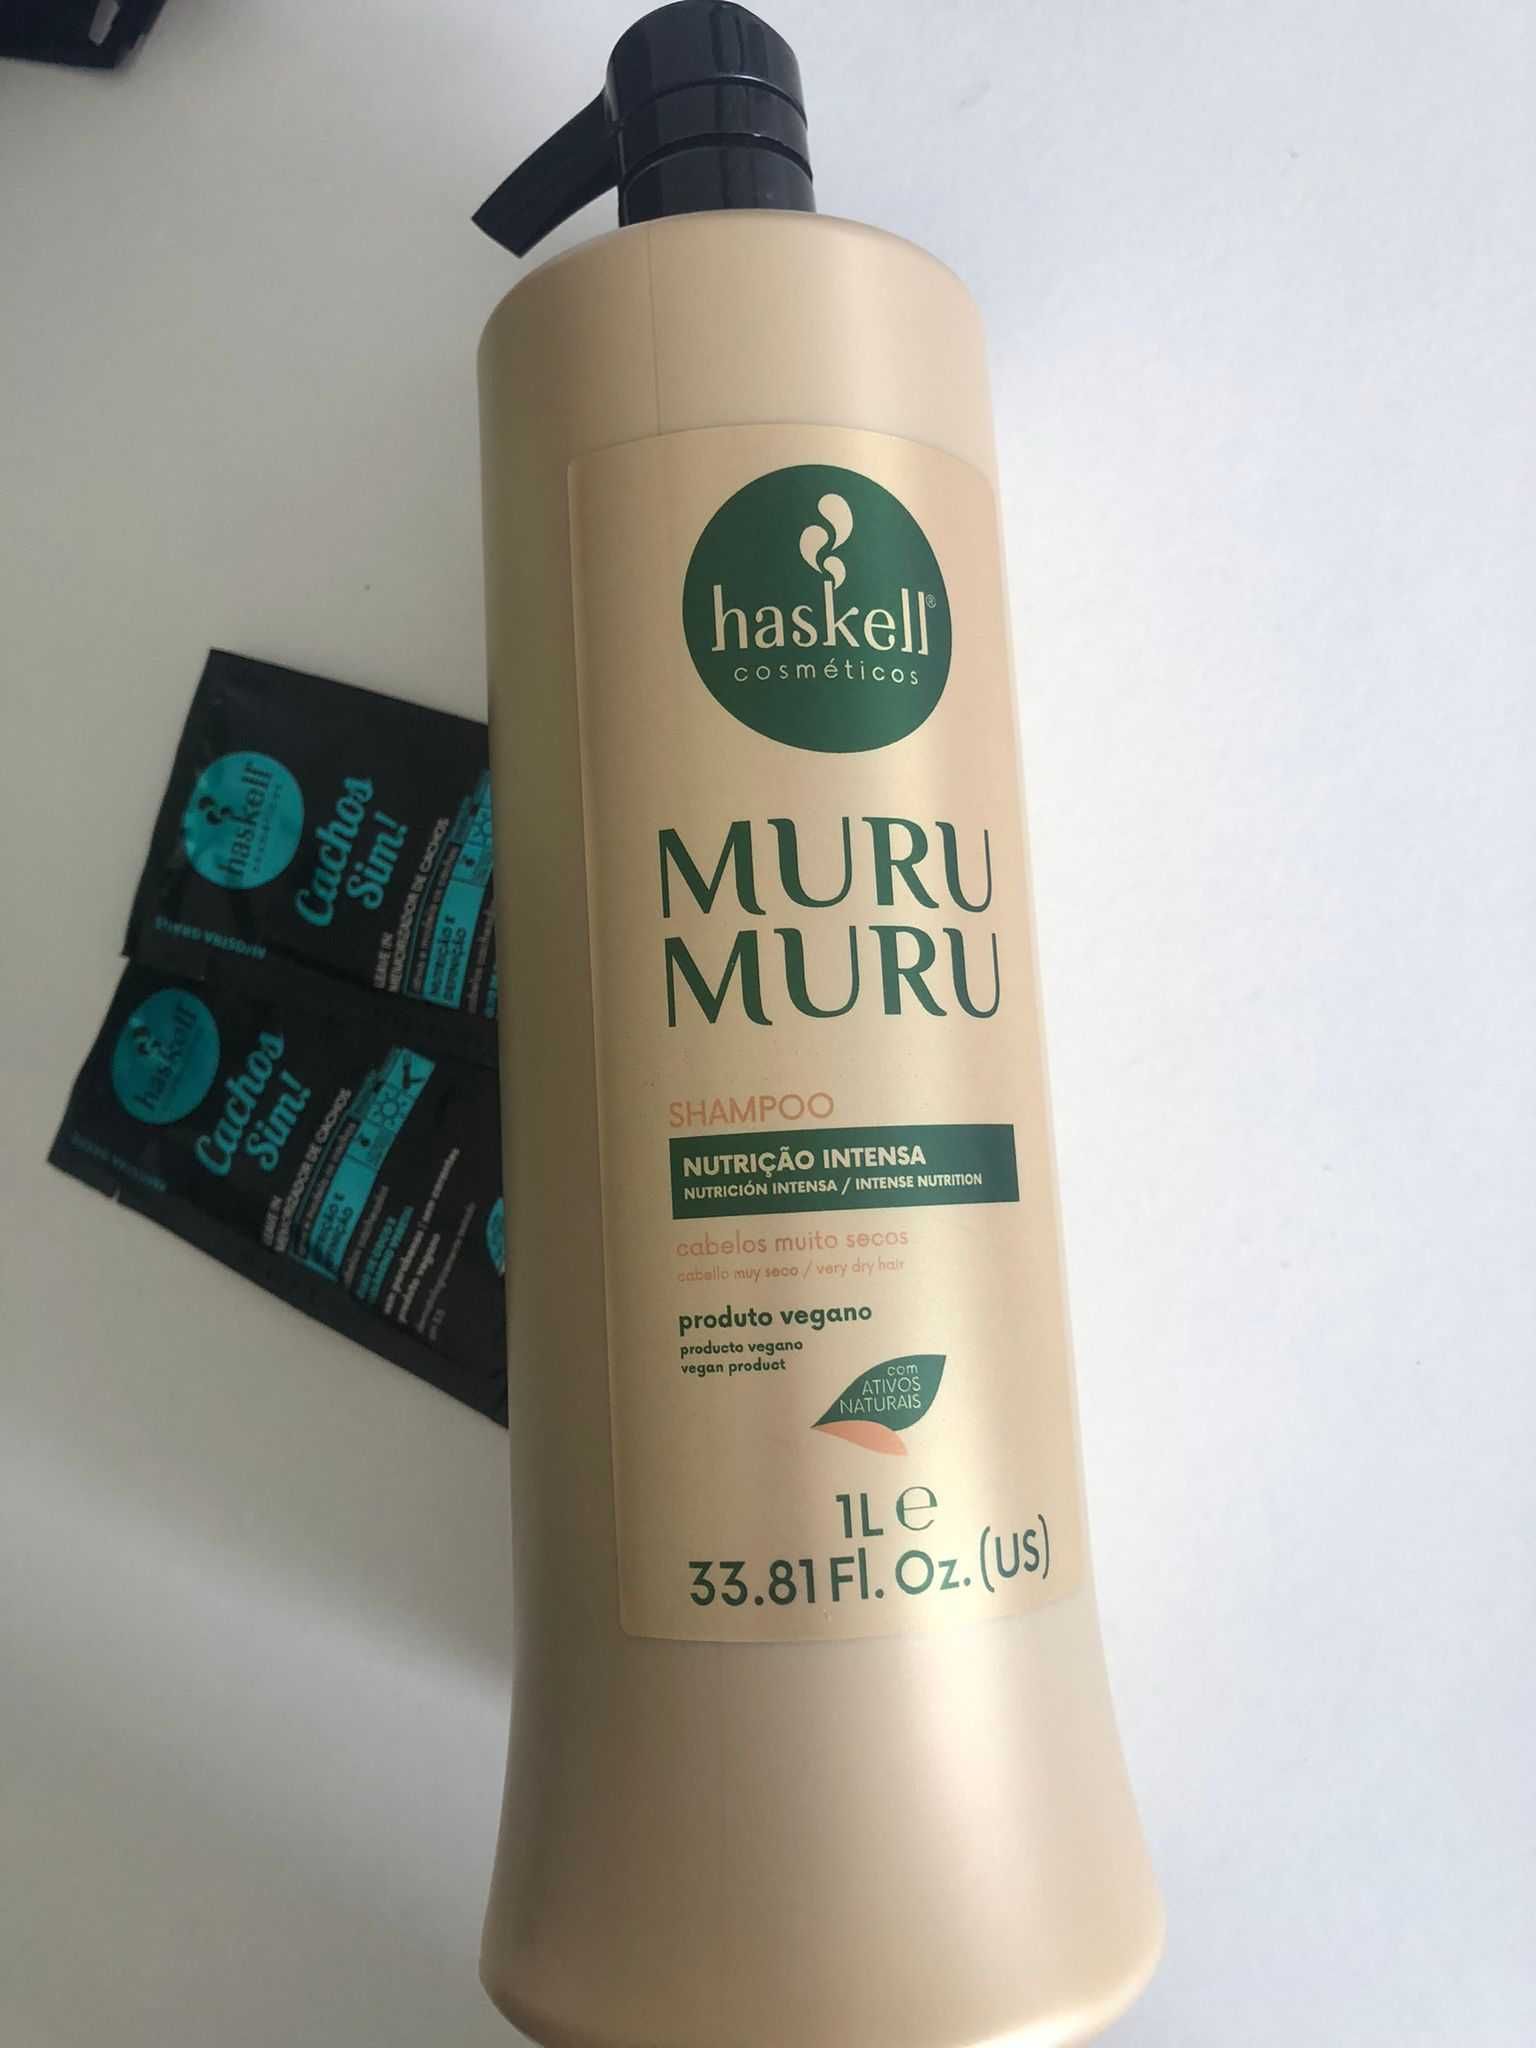 Shampoo Haskell Murumuru para nutrição dos cabelos 1 litro